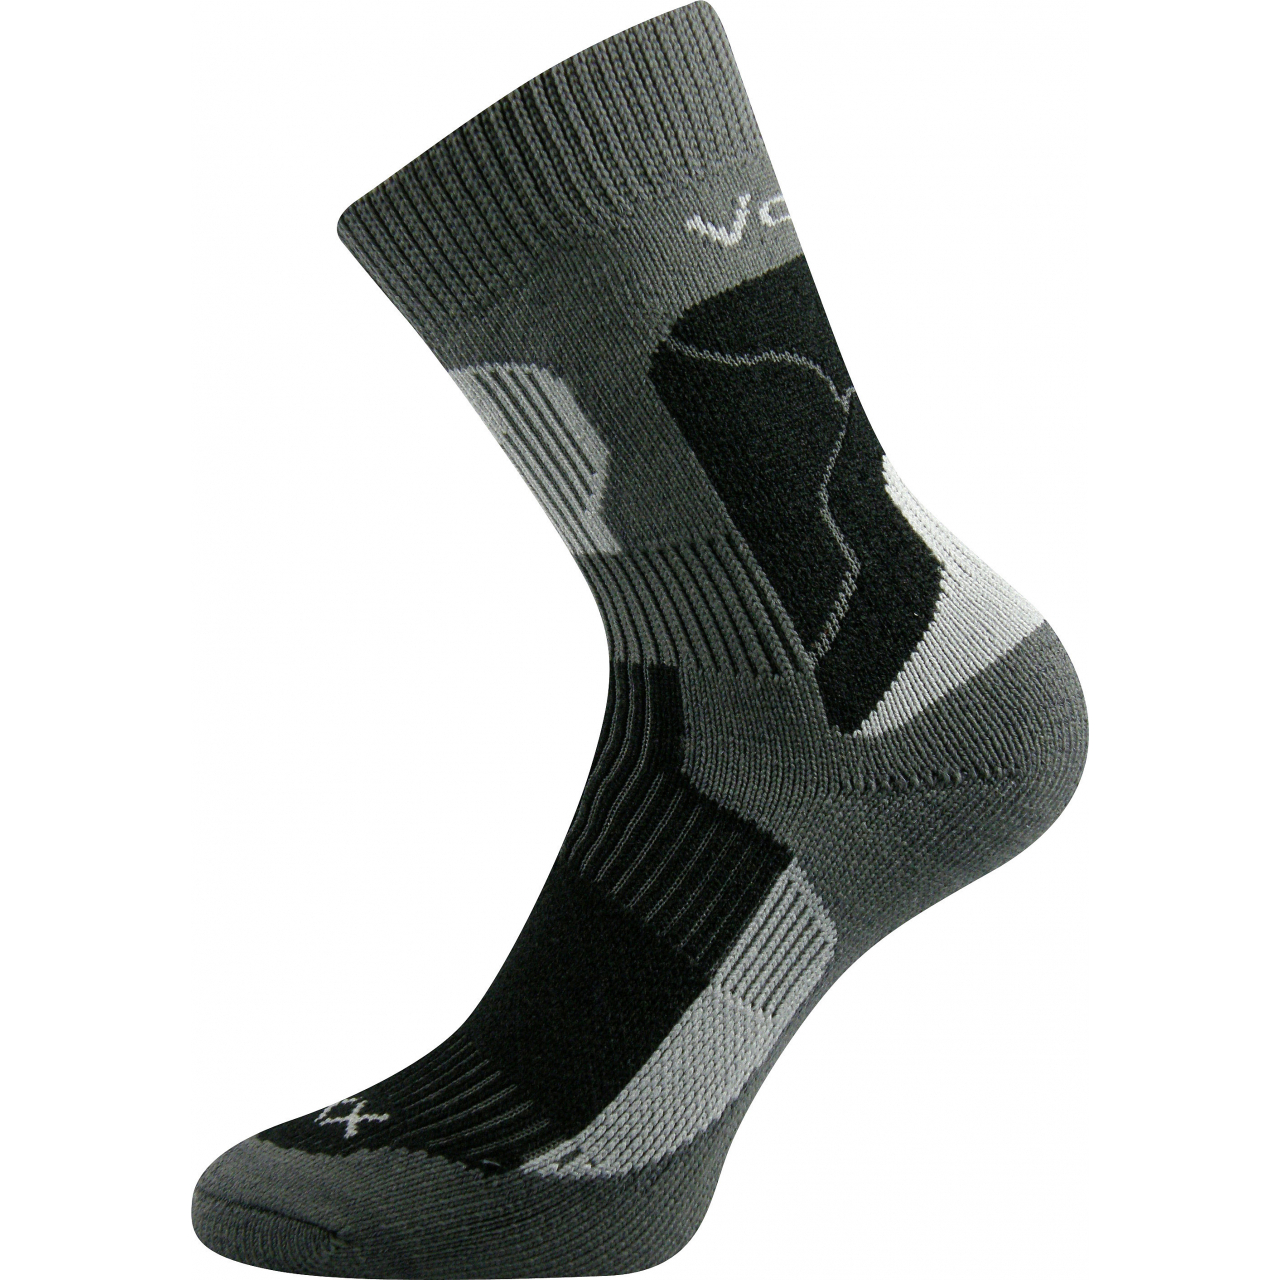 Ponožky unisex termo Voxx Treking - tmavě šedé-černé, 38-39